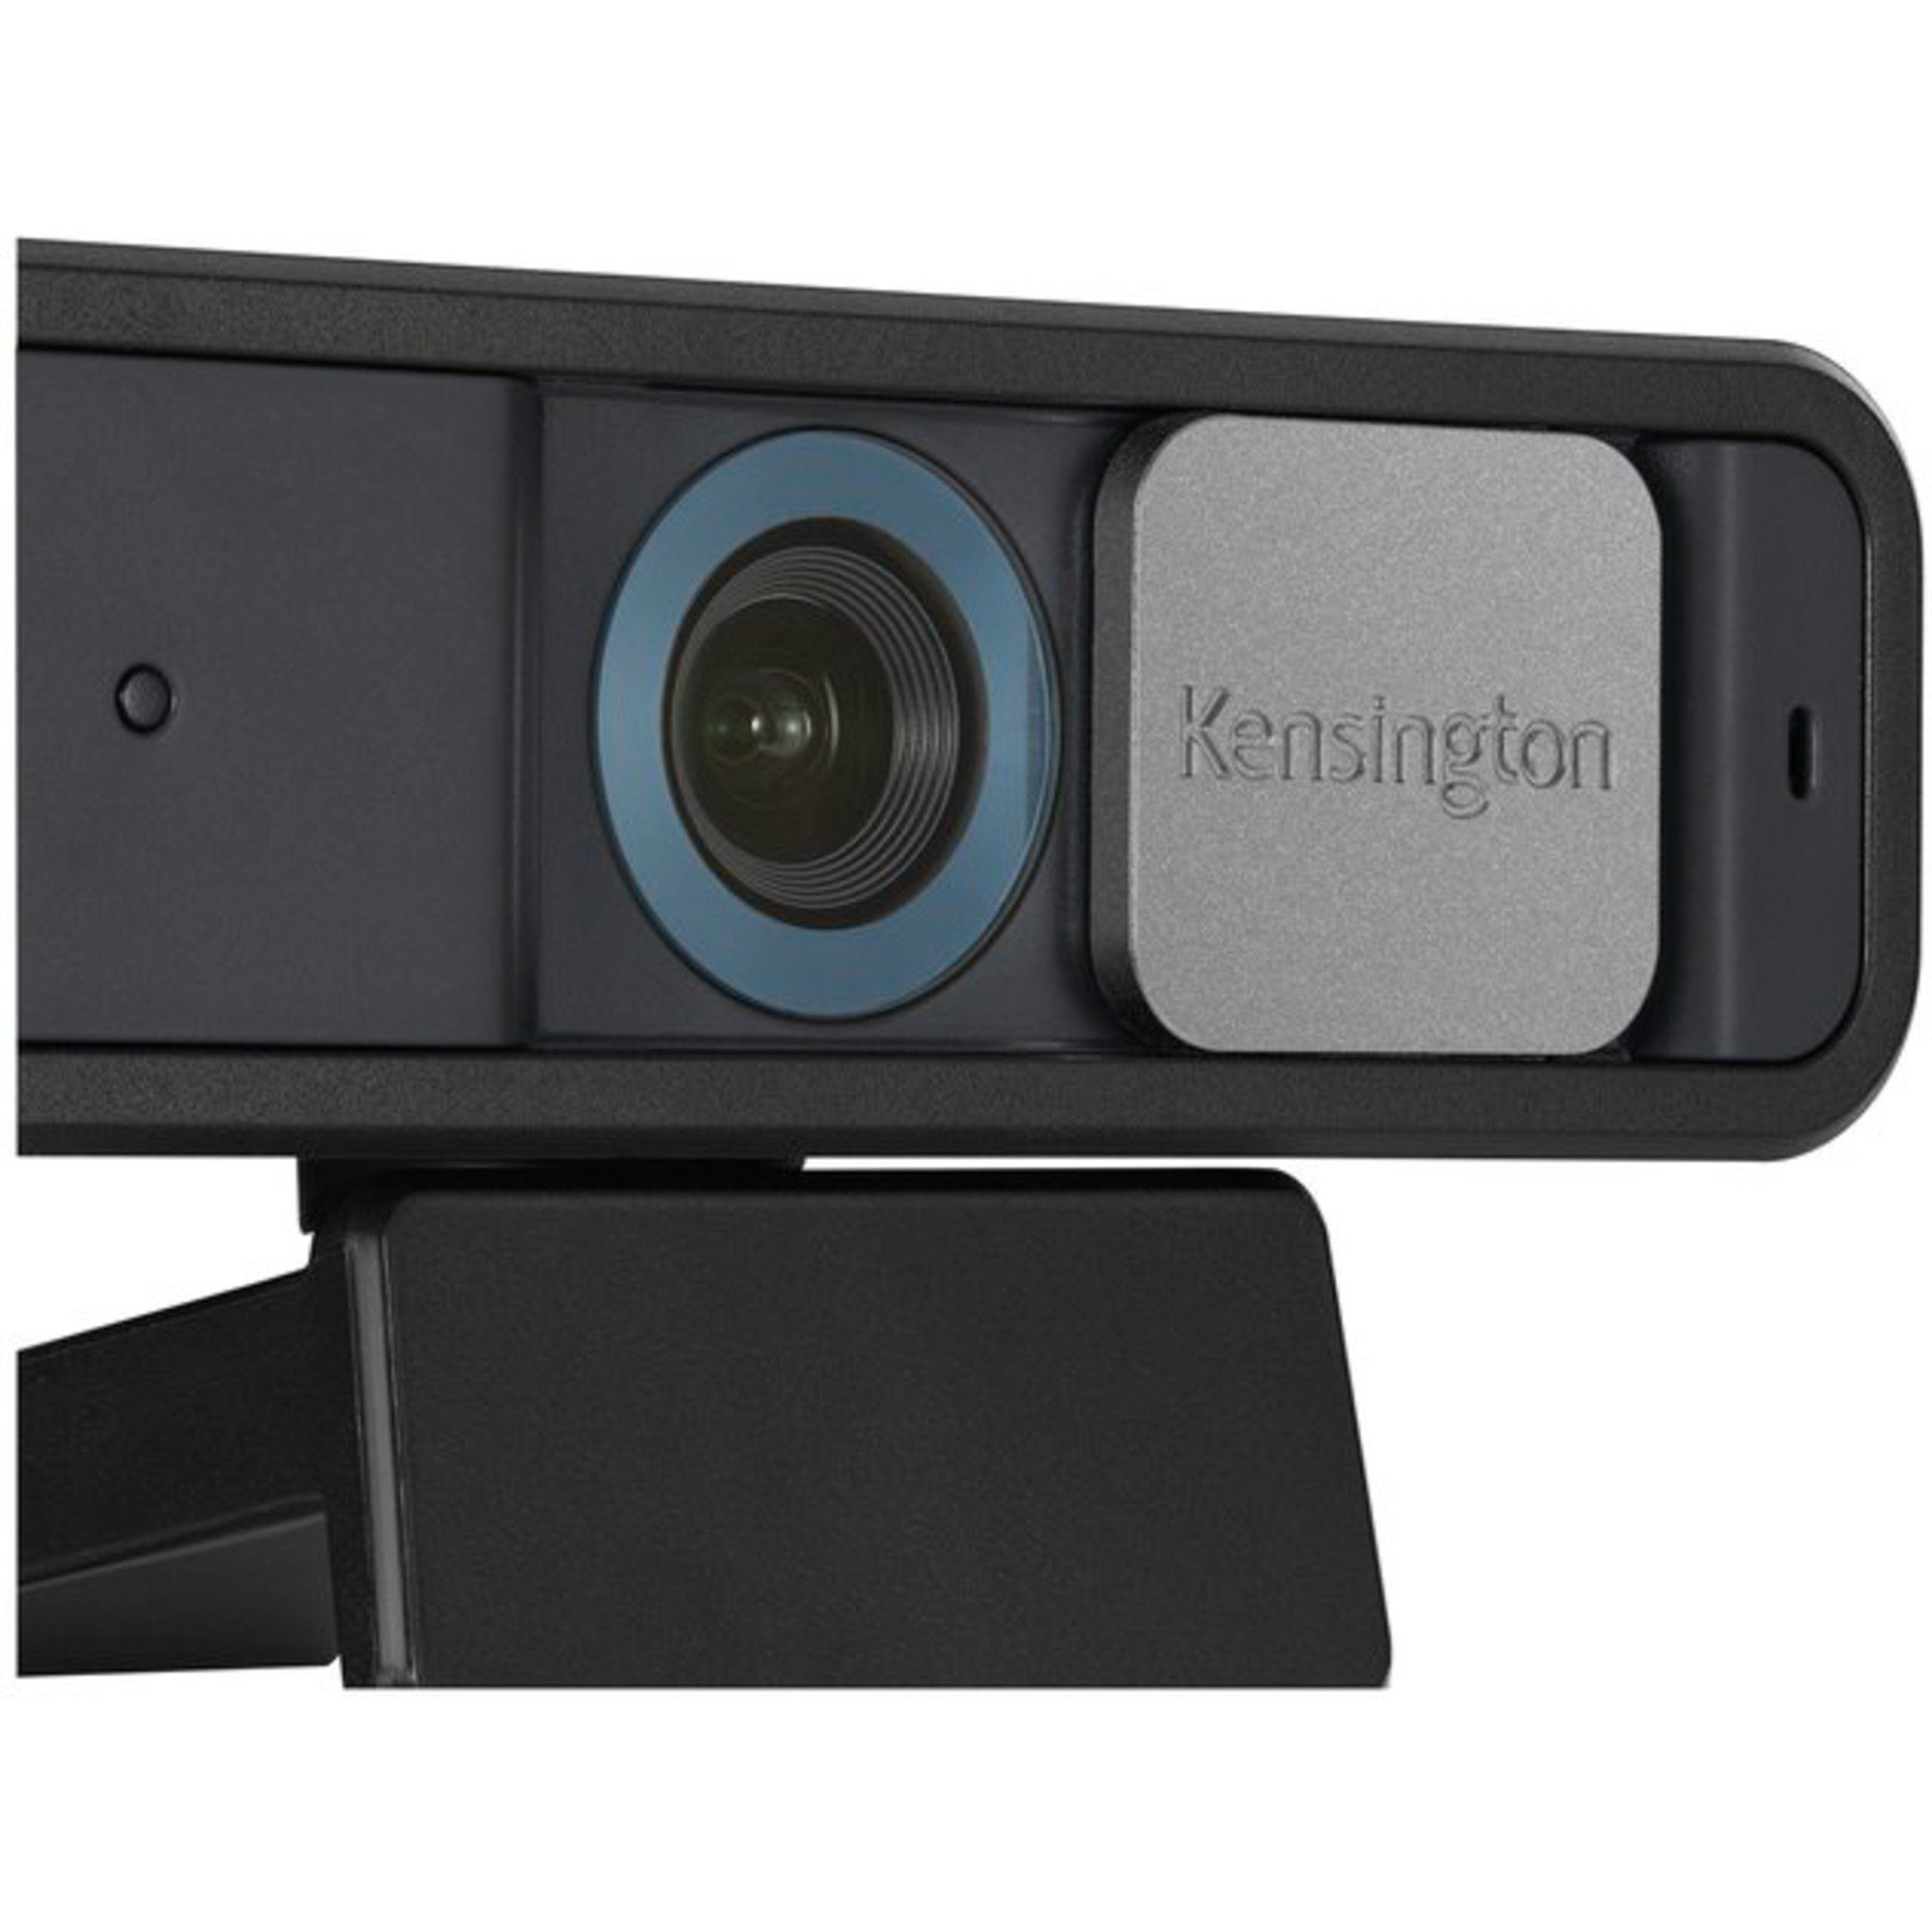 Auto Webcam W2050 Focus, Kensington 1080p Pro KENSINGTON Webcam